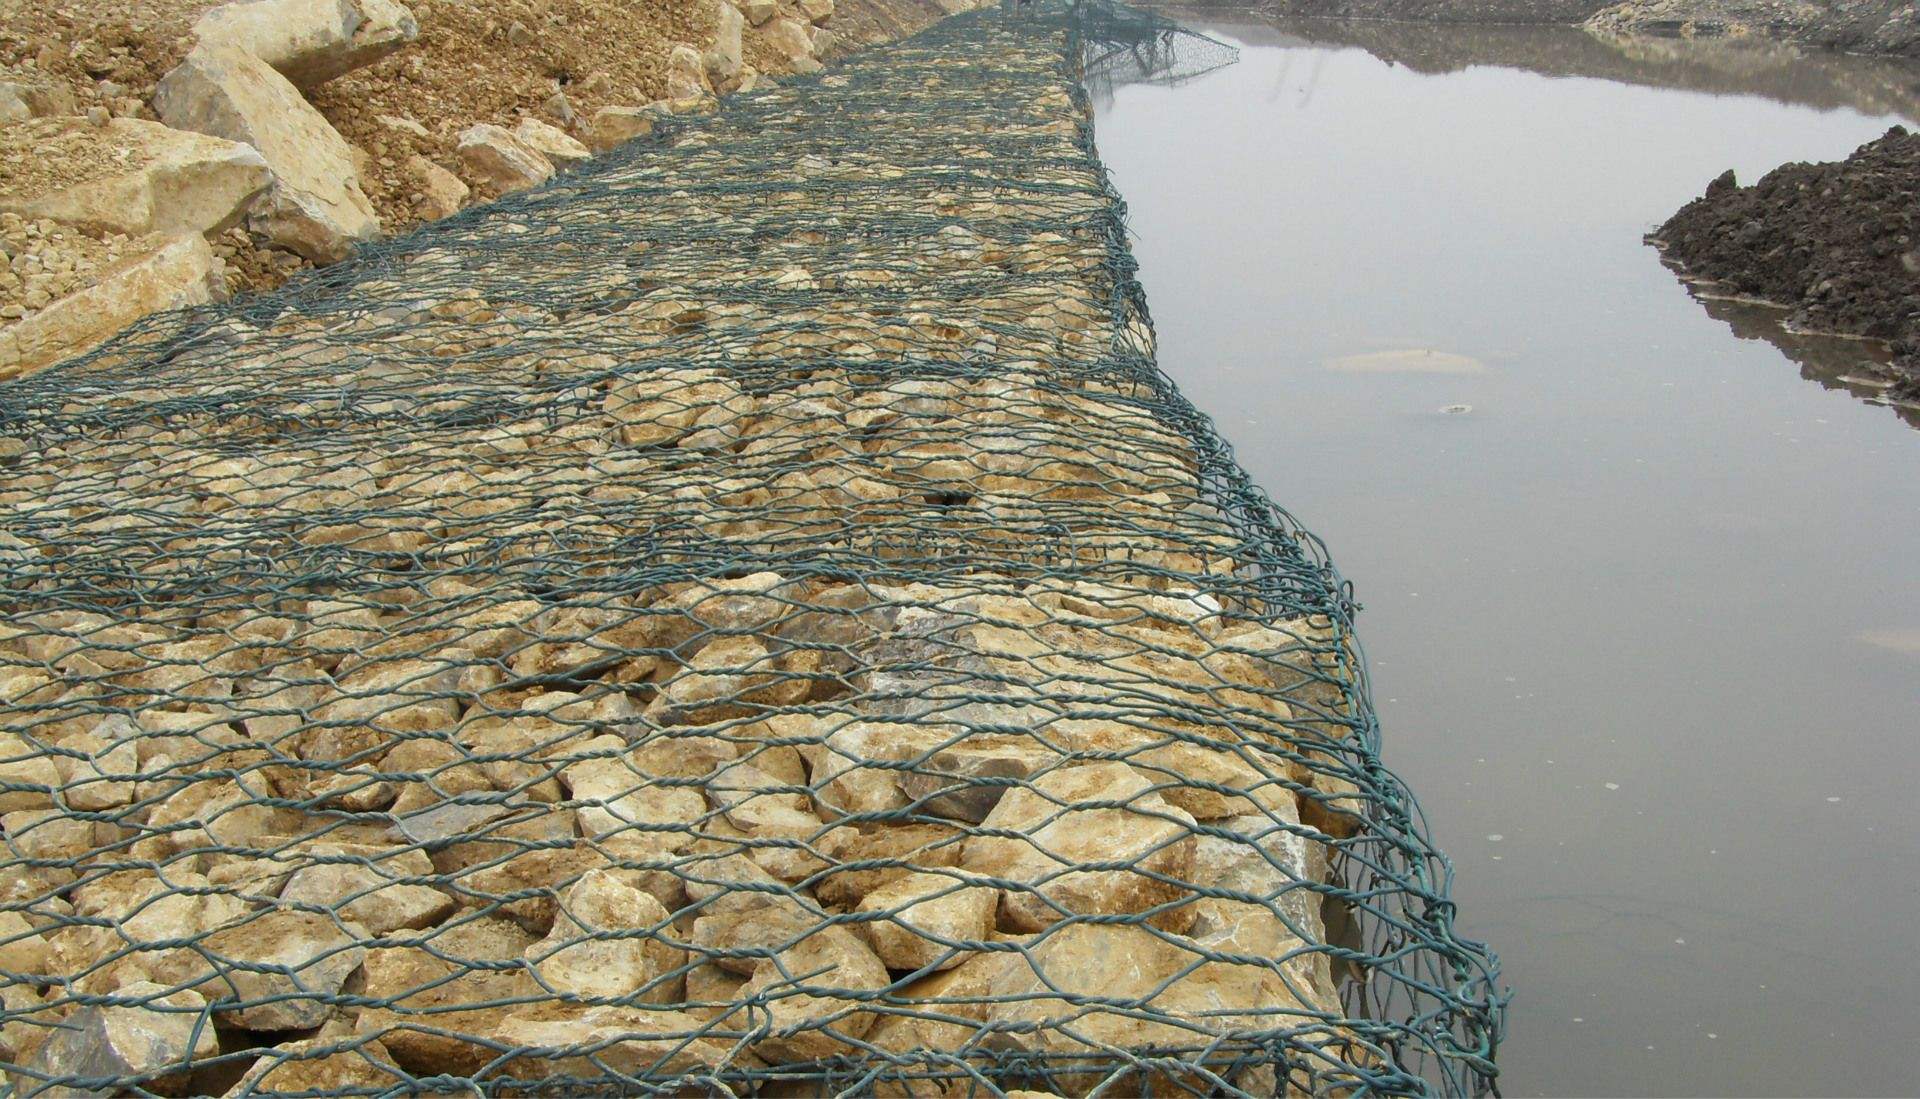 石笼网用作河岸防护